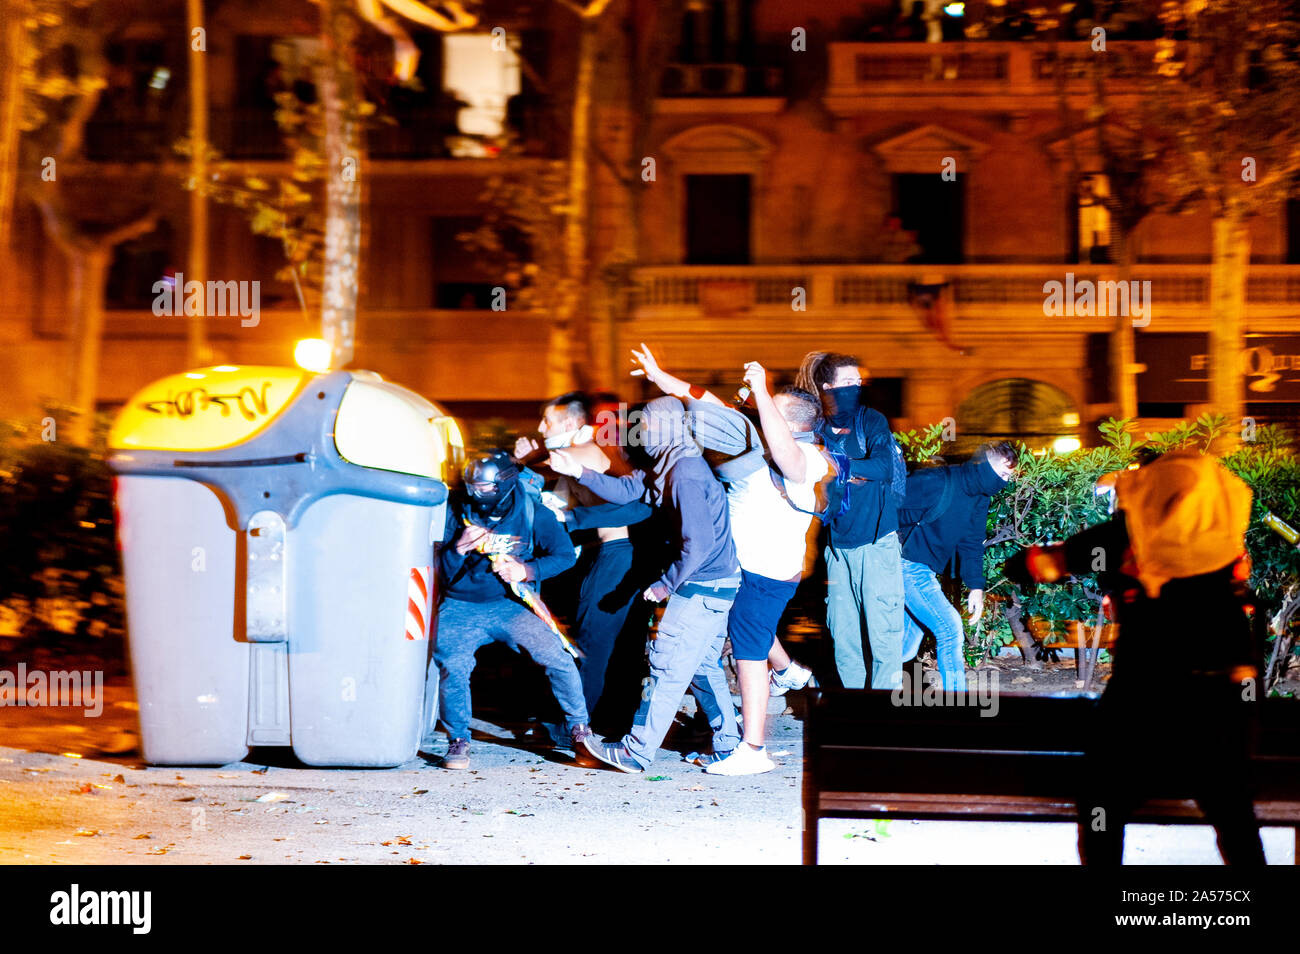 Barcelone, Espagne - 18 octobre 2019 : les jeunes catalans jeter des bouteilles et des pierres sur les policiers au cours des émeutes pour l'indépendance de la Catalogne dans la nuit provoquant des émeutes je Banque D'Images